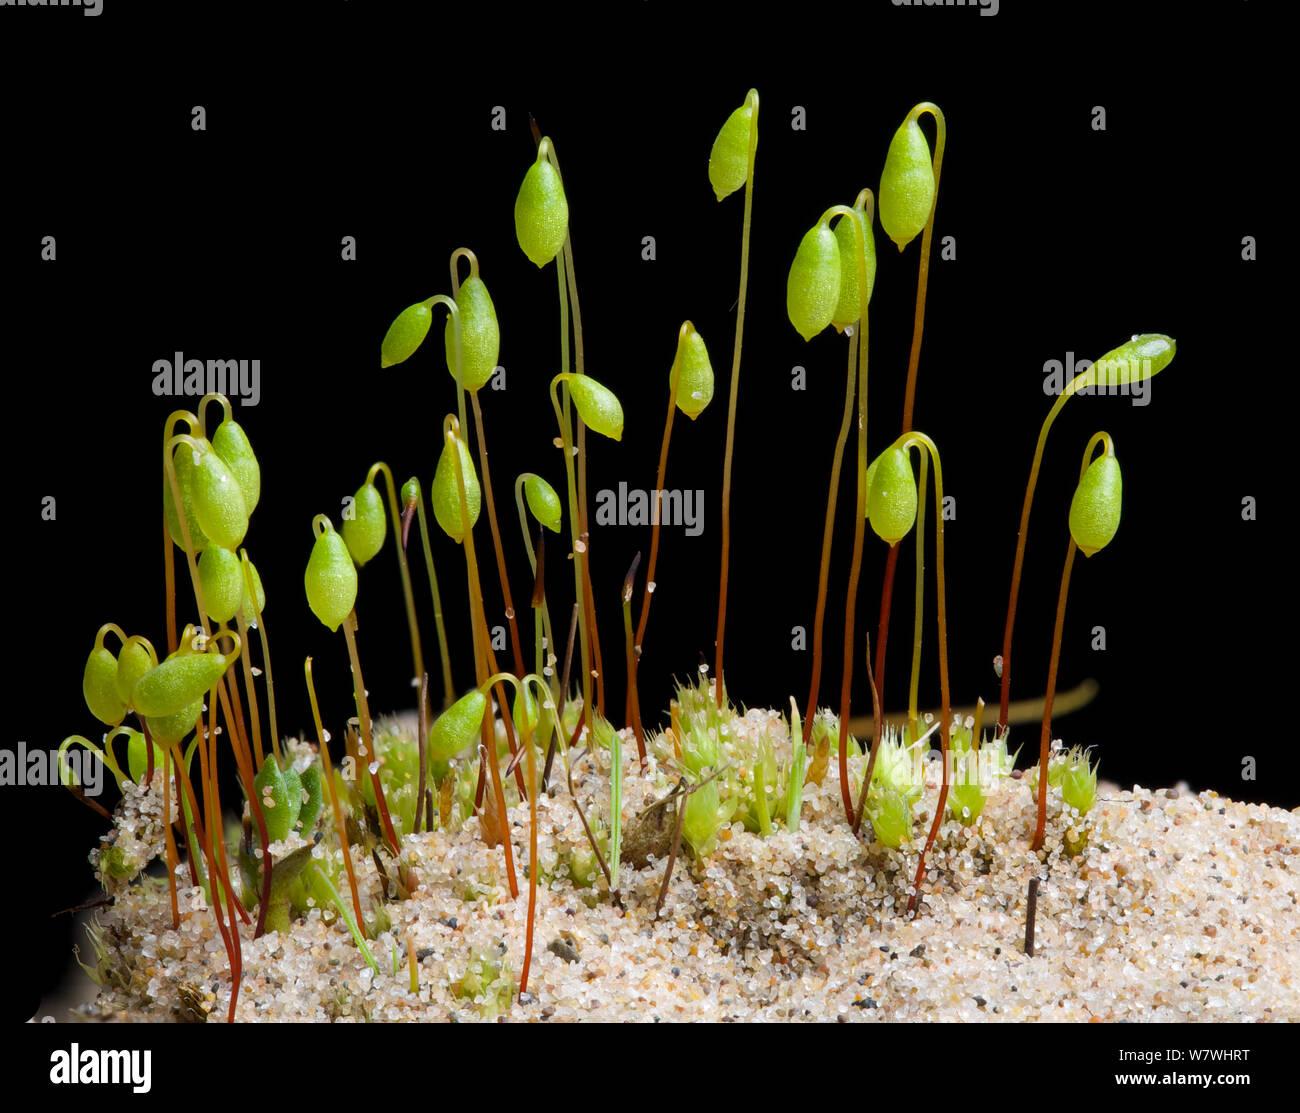 moss-bryum-algovicum-var-rutheanum-con-capsulas-de-esporas-crece-sobre-una-duna-de-arena-ainsdale-reserva-natural-merseyside-reino-unido-abril-w7whrt.jpg